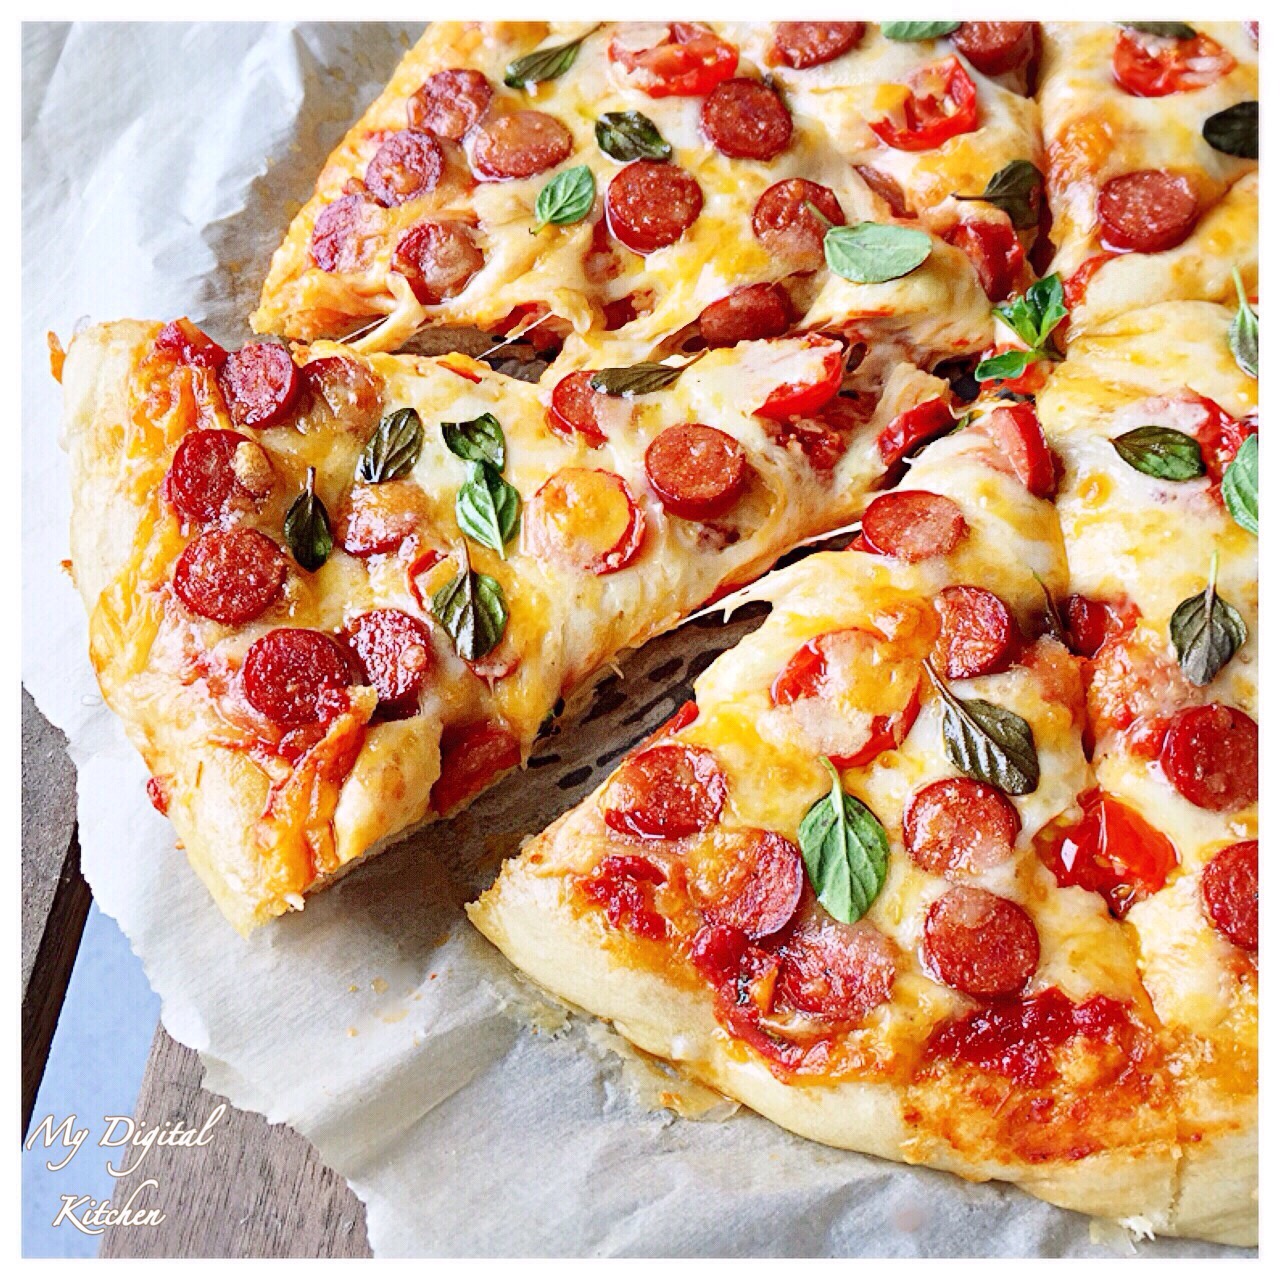 рецепты приготовления пиццы в домашних условиях с колбасой и сыром фото 18